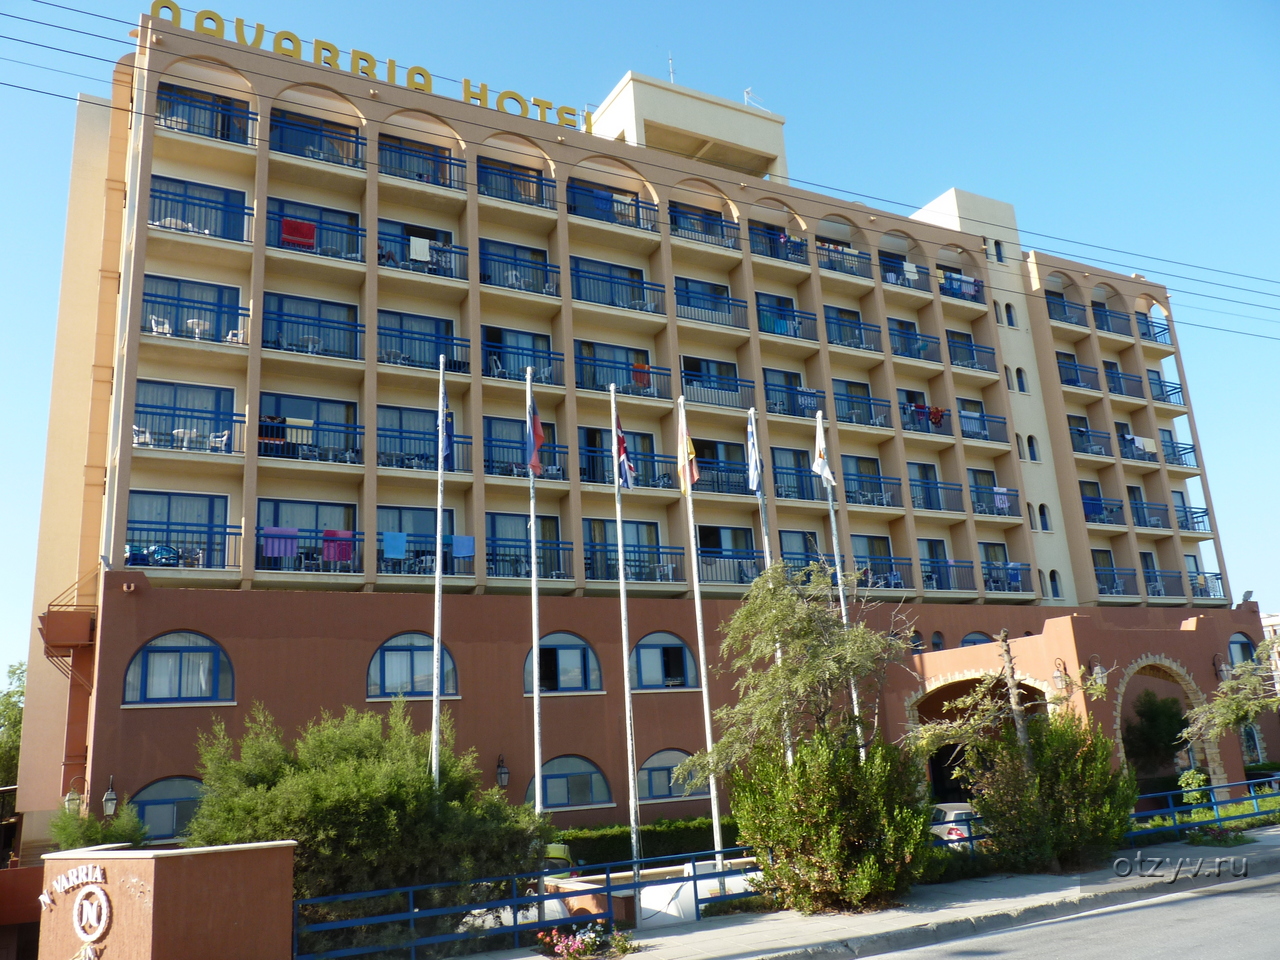 Кипр лимассол отель навария